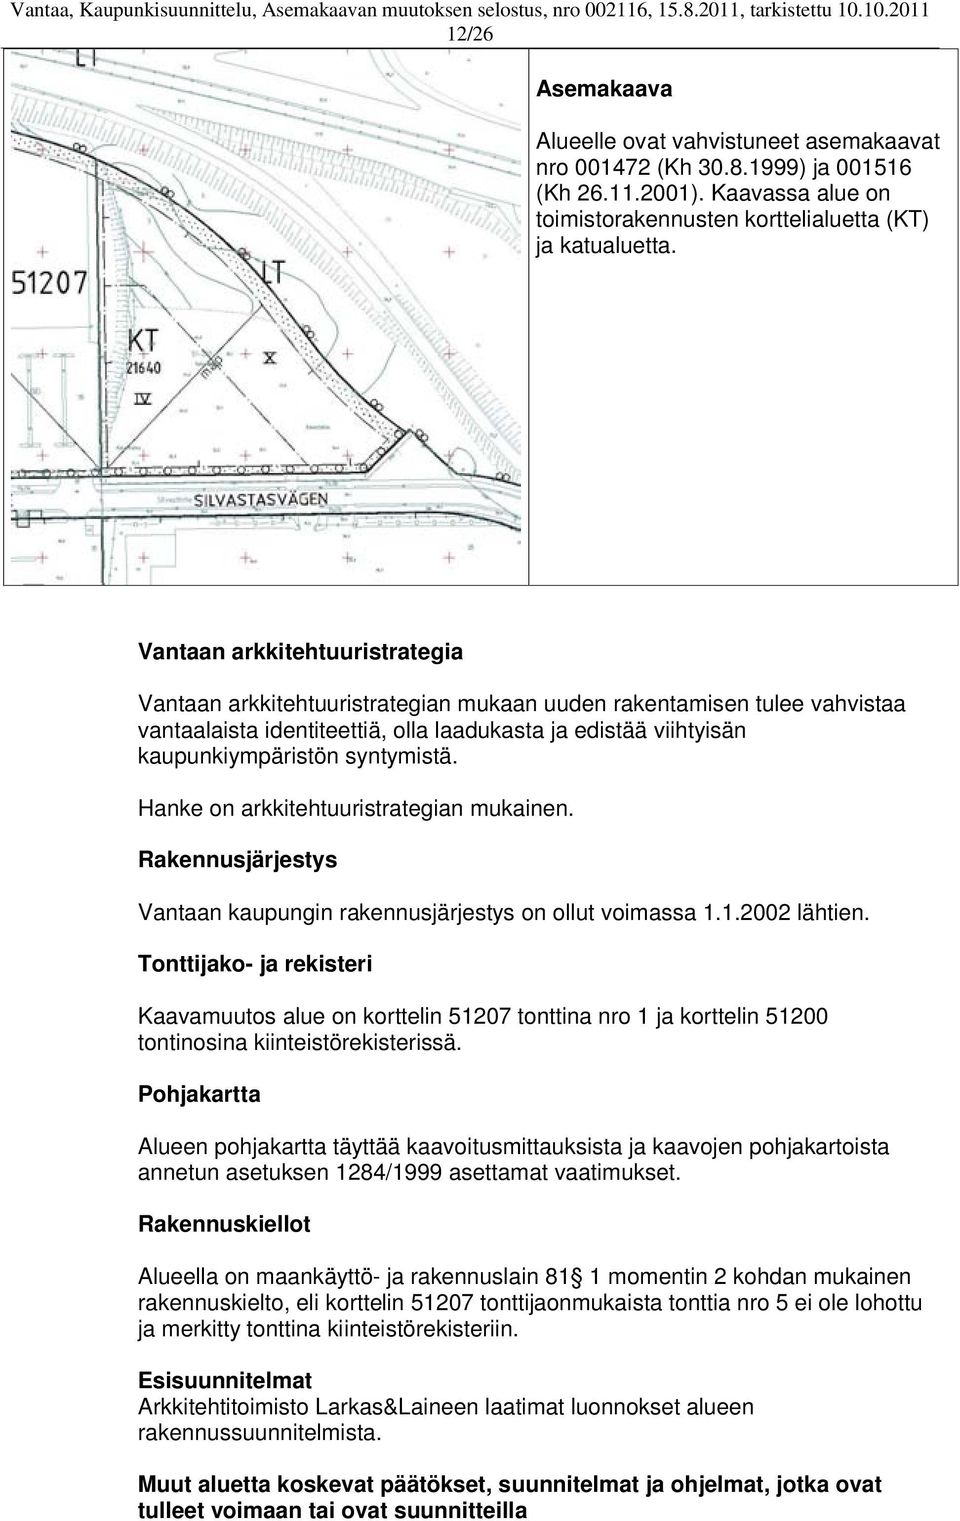 syntymistä. Hanke on arkkitehtuuristrategian mukainen. Rakennusjärjestys Vantaan kaupungin rakennusjärjestys on ollut voimassa 1.1.2002 lähtien.